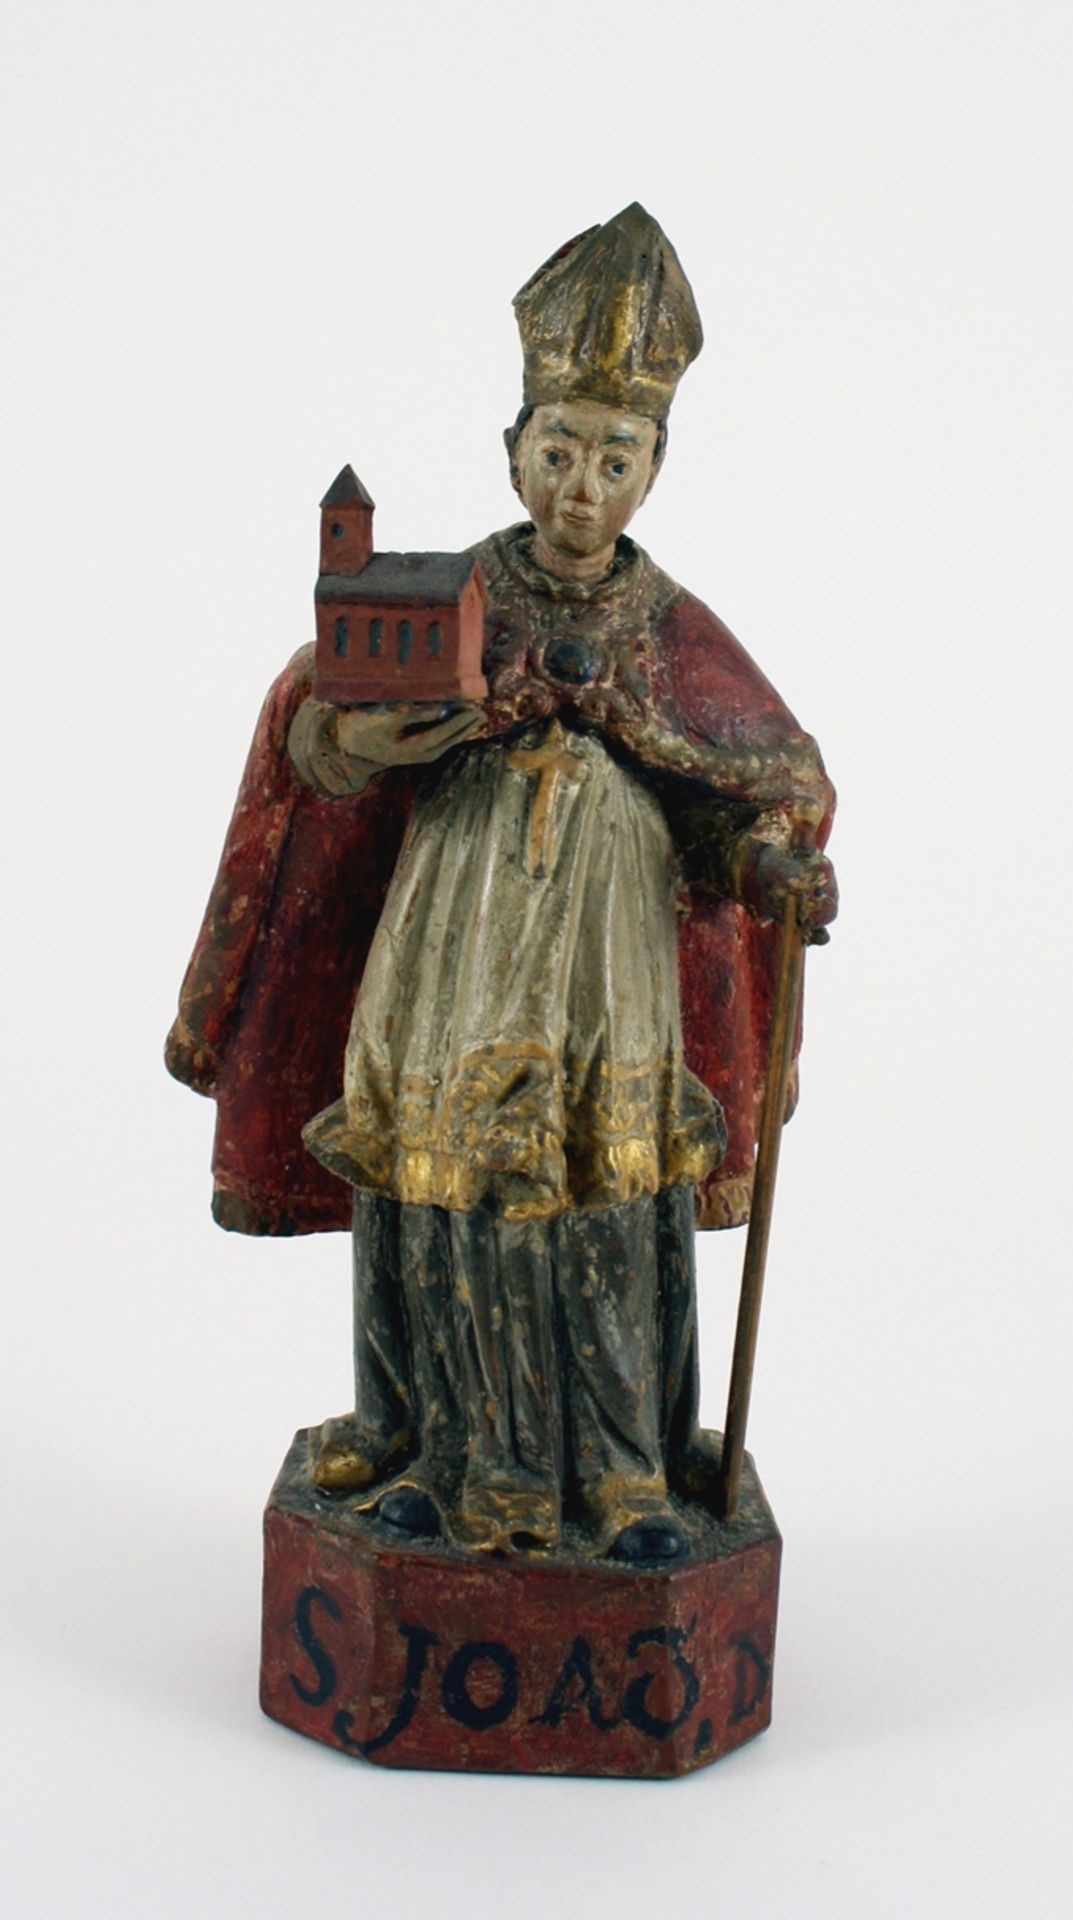 Hl. Bischof mit Kirchenmodell. Holz polychrom gefasst. 18. Jh. H 21 cm, Sammlung Bühl Konstanz